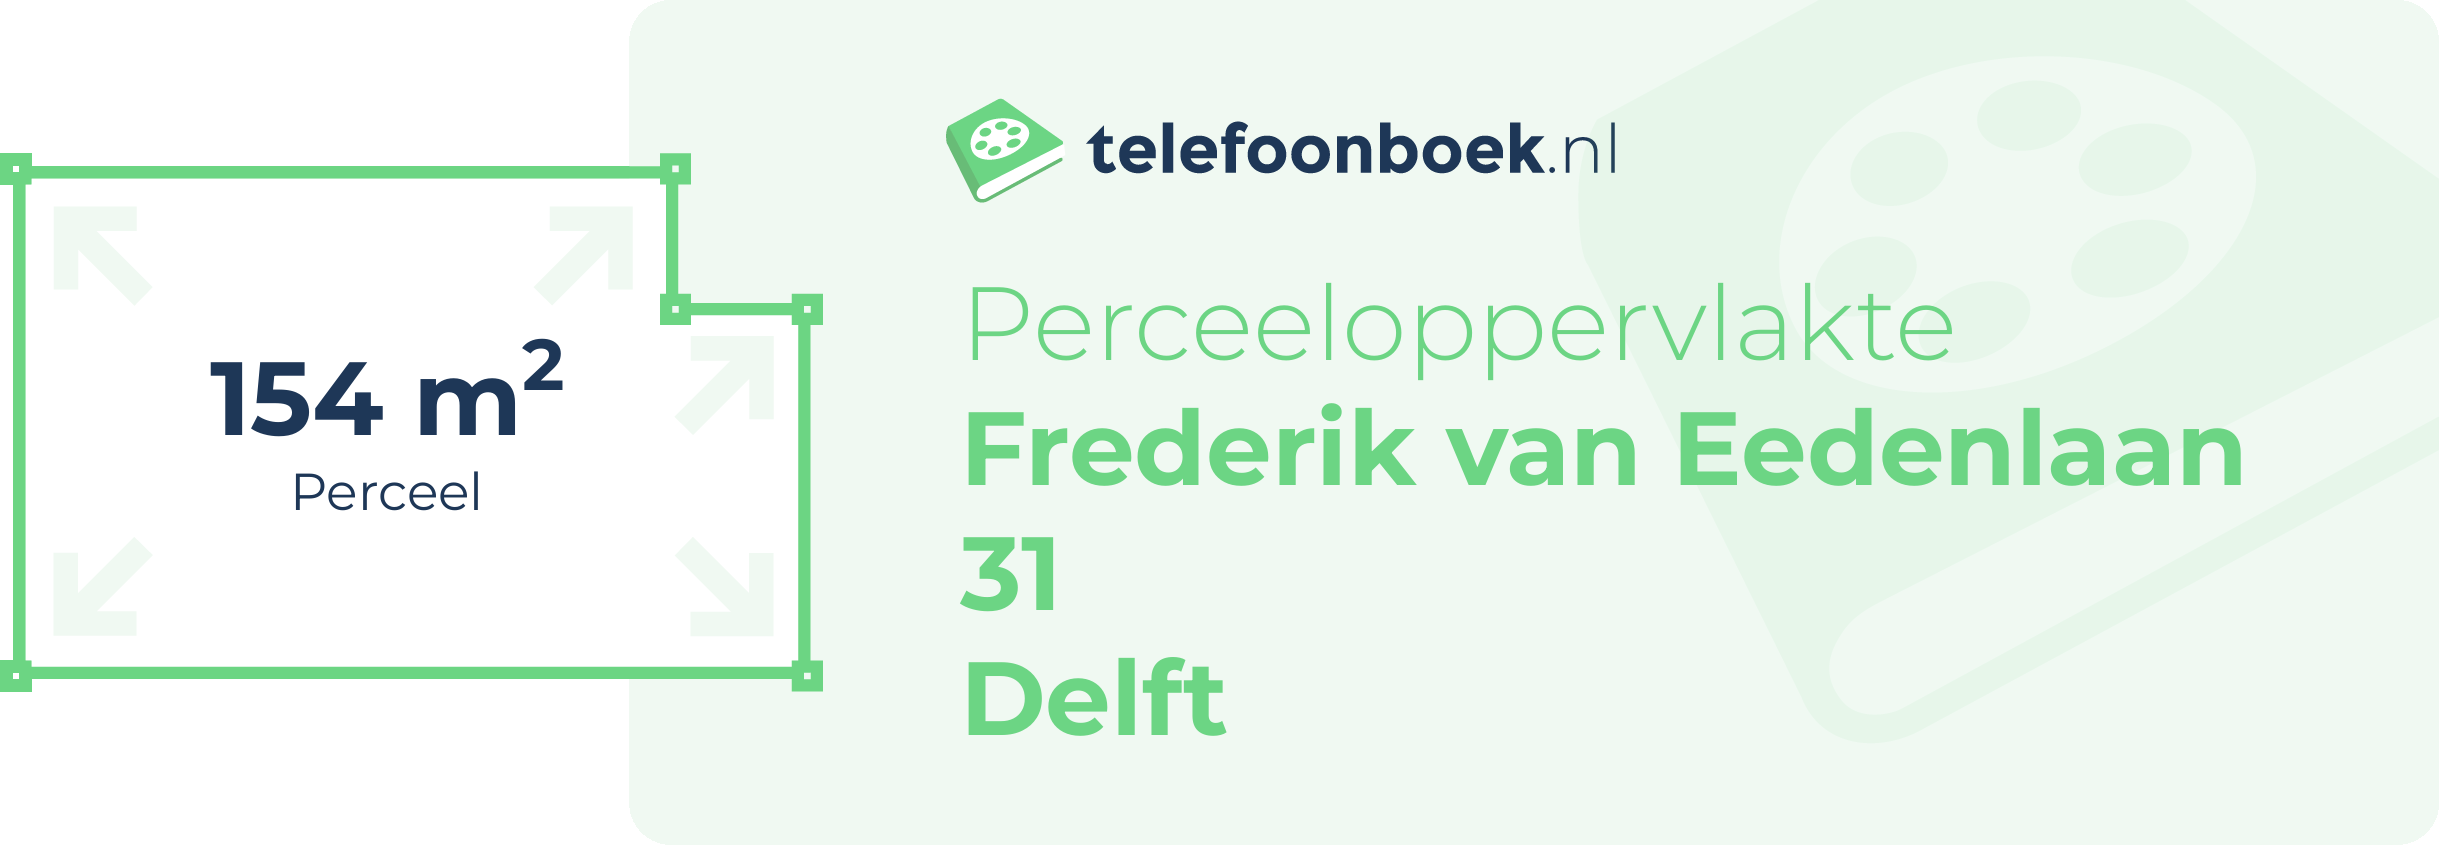 Perceeloppervlakte Frederik Van Eedenlaan 31 Delft